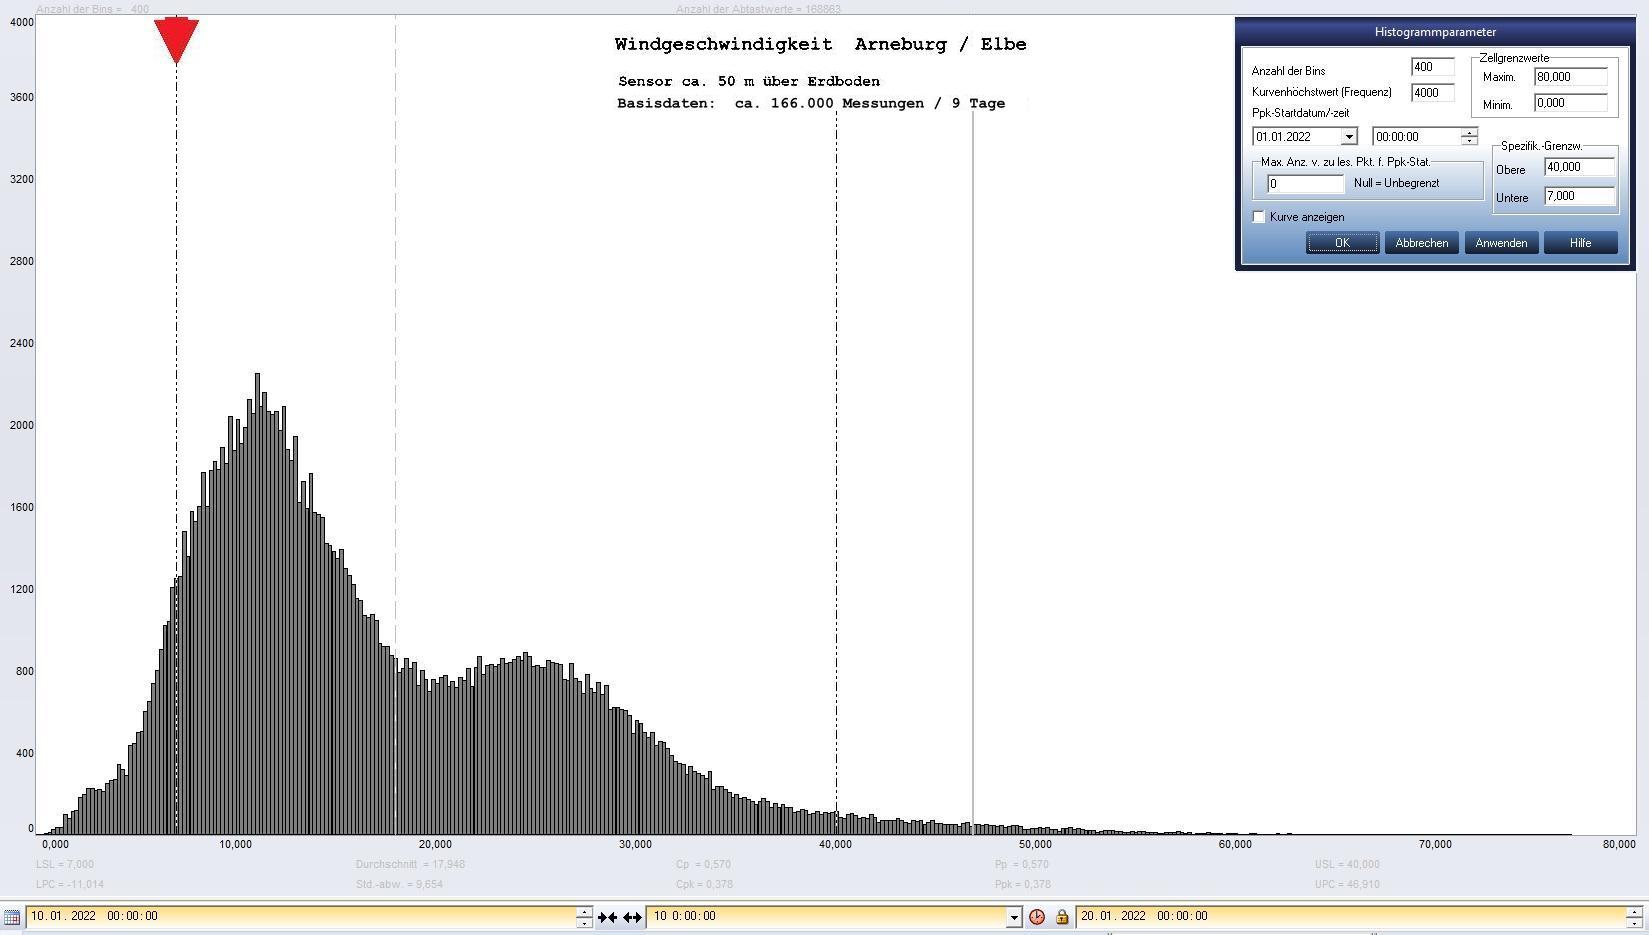 Arneburg 9 Tage Histogramm Winddaten, ab 10.01.2022 
  Sensor auf Gebude, ca. 50 m ber Erdboden, Basis: 5s-Aufzeichnung